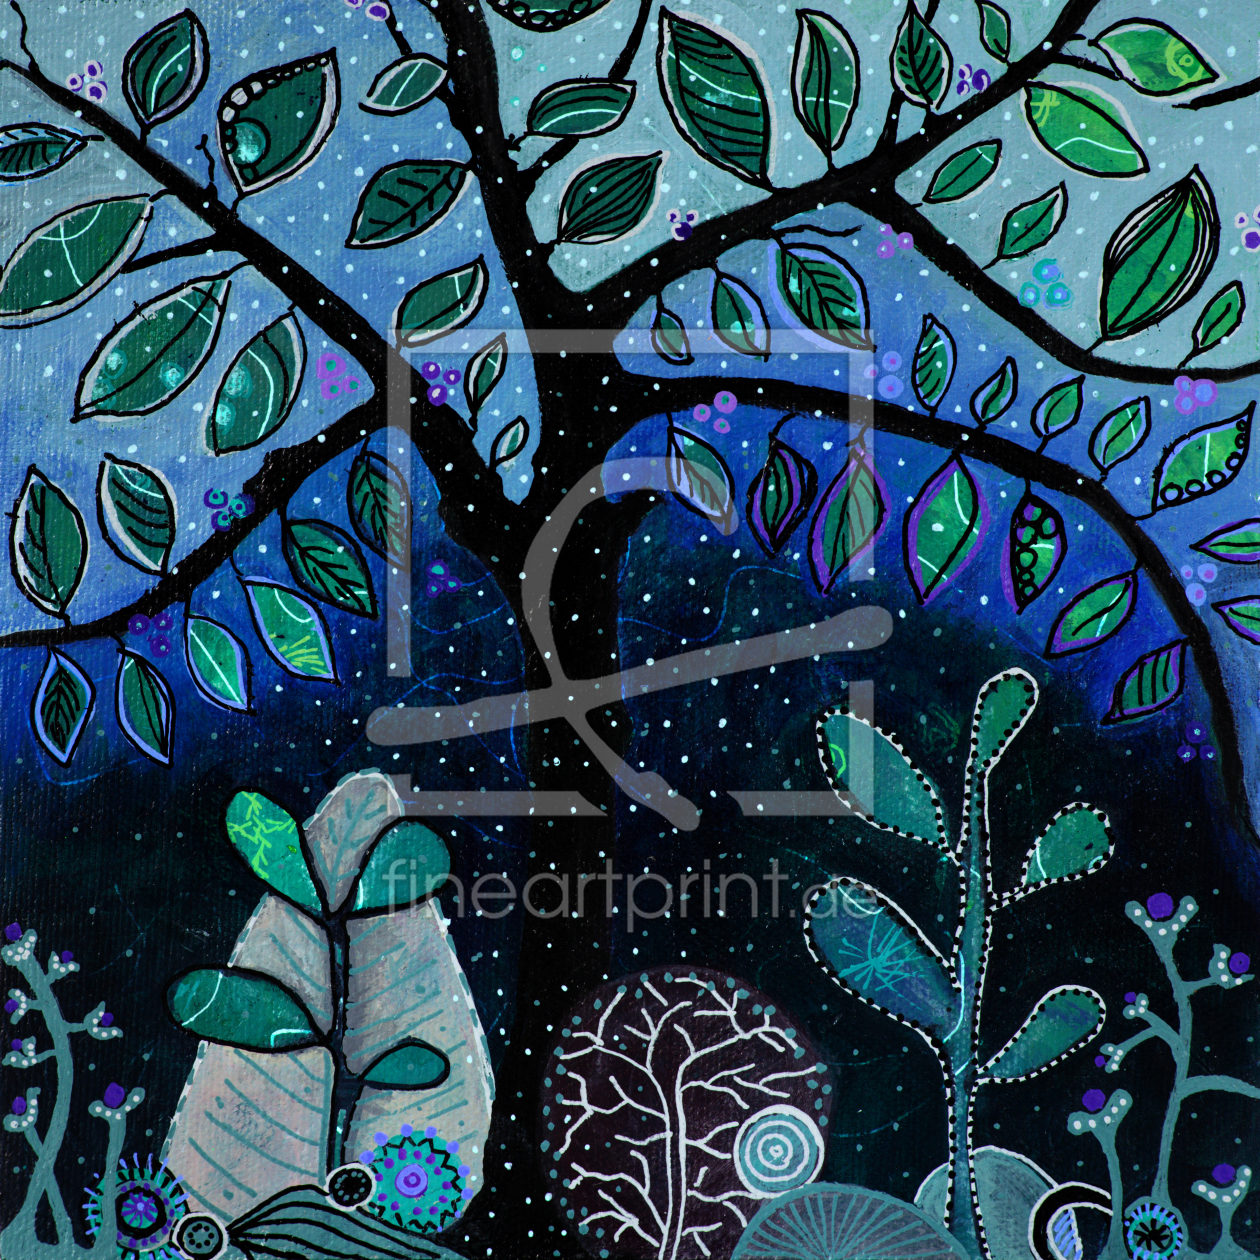 Bild-Nr.: 12388338 traumbaum in winternacht  -  dreamy tree at winter erstellt von augenWerk